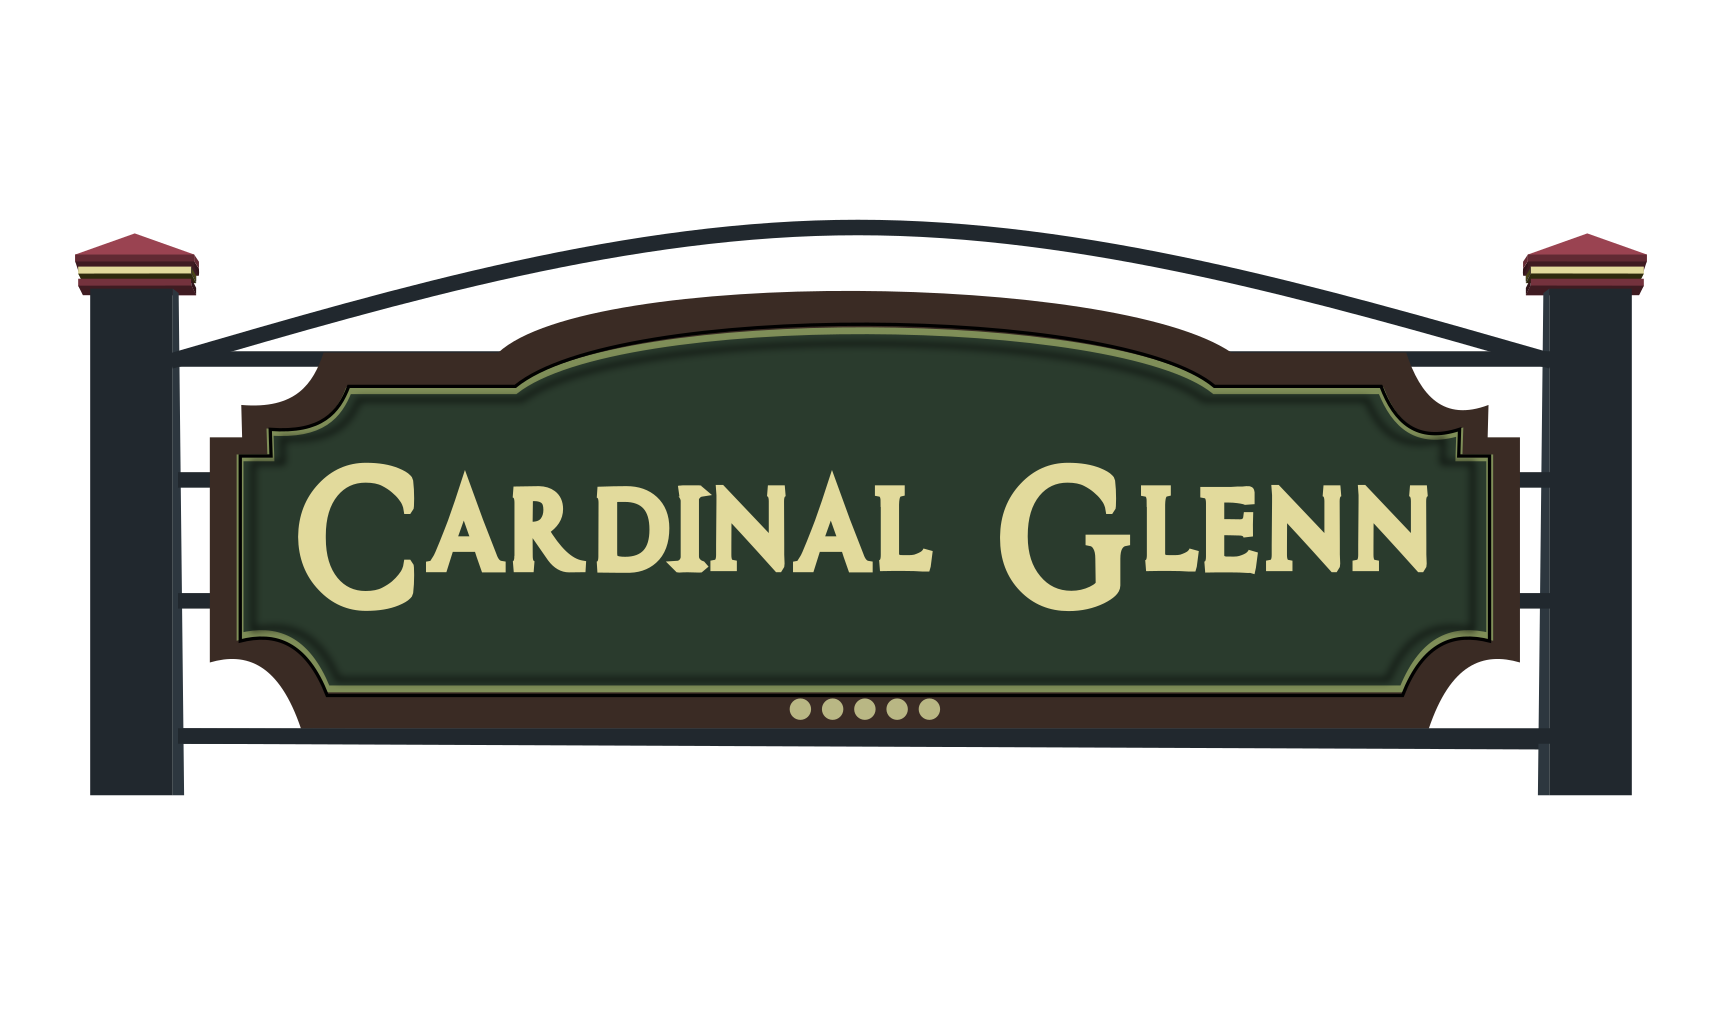 Cardinal Glenn Neighborhood — Fit for a Family